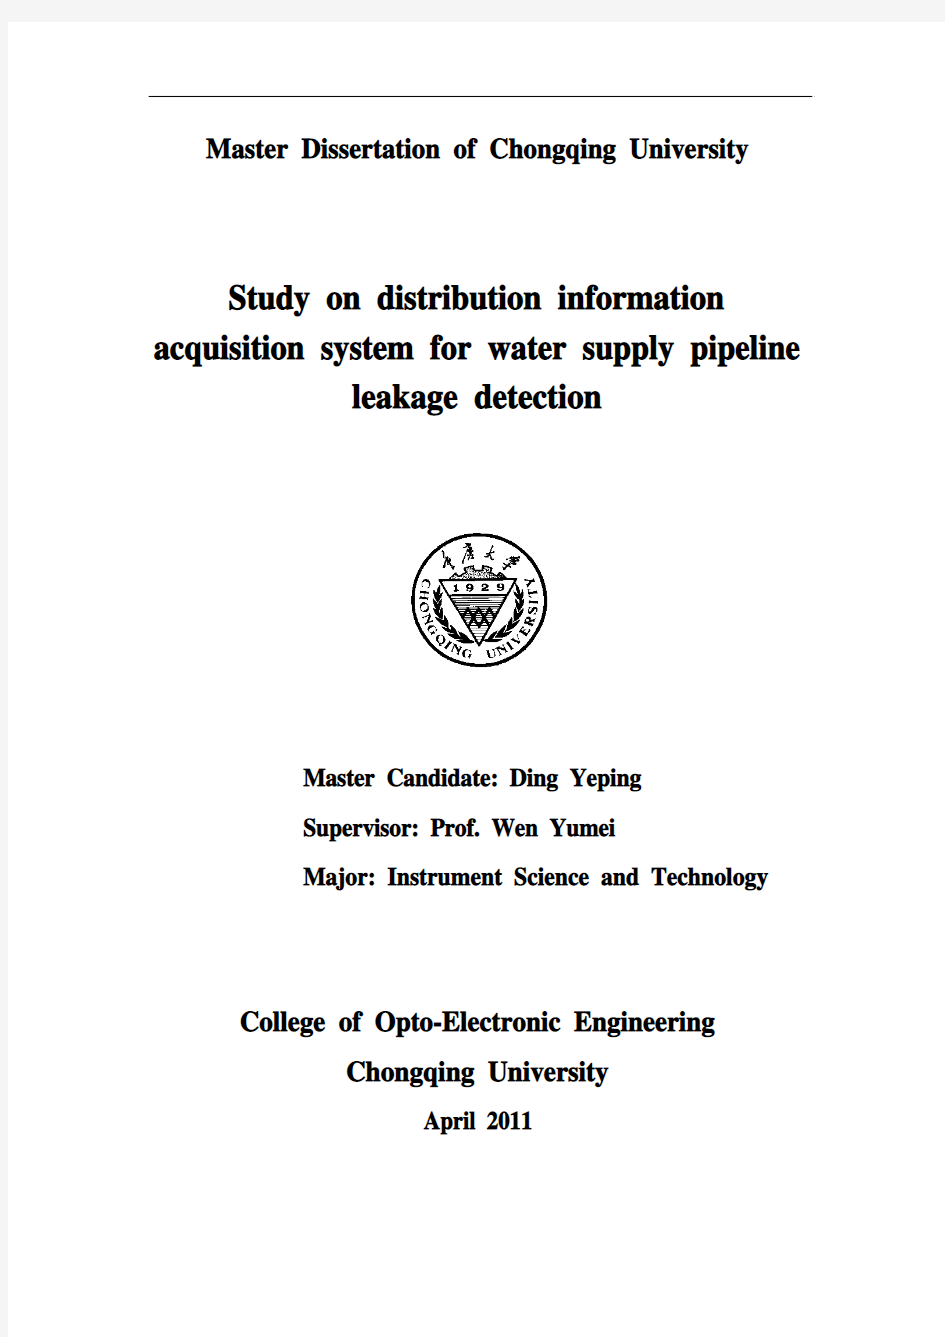 供水管网泄漏检测分布式信号采集系统研究--20110513-丁业平